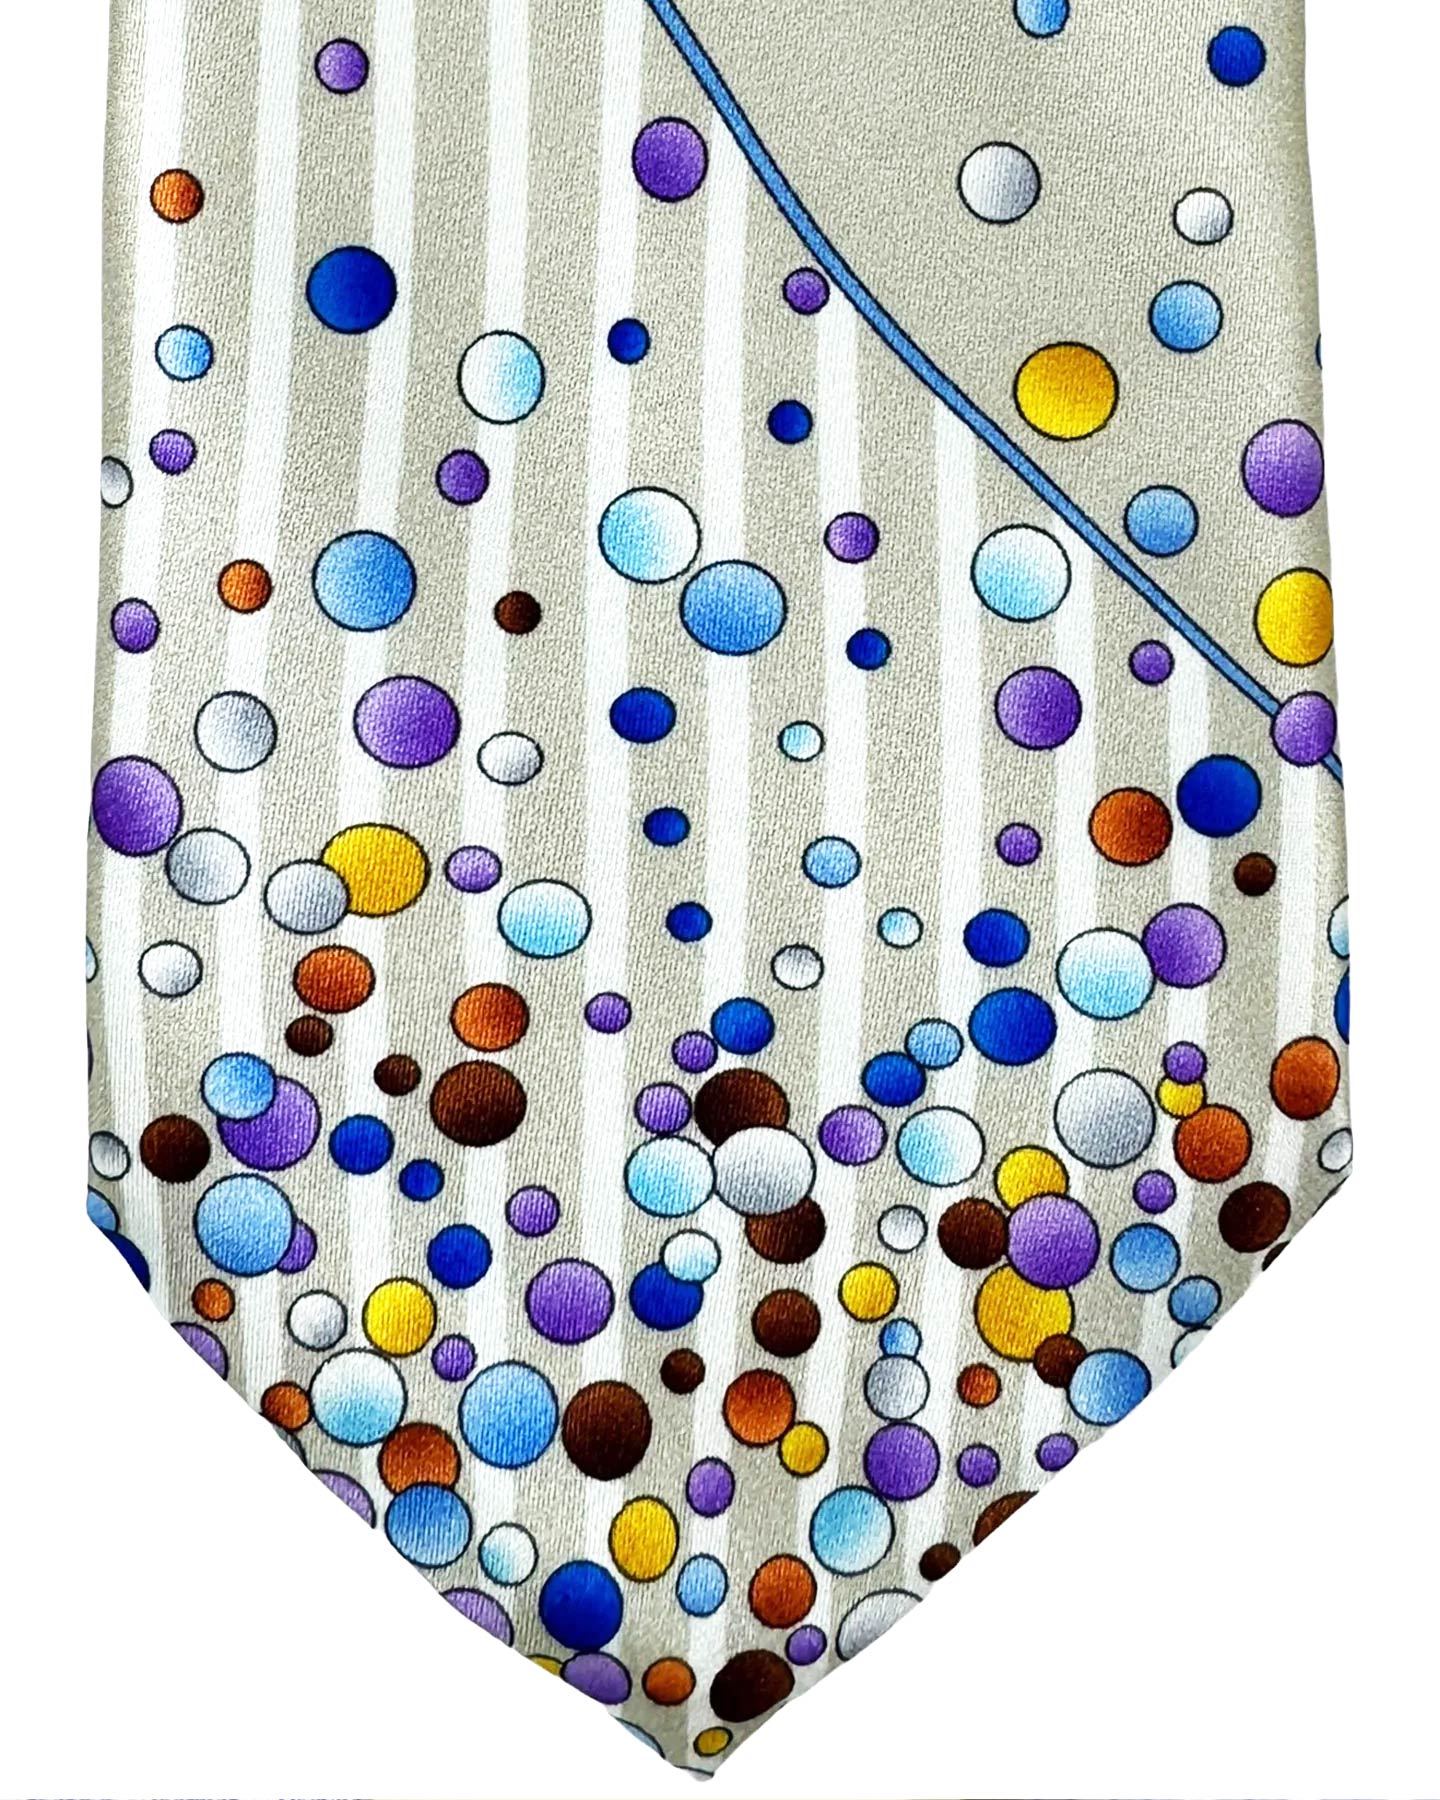 Vitaliano Pancaldi Silk Tie Gray Purple Blue Stripes Dots Design